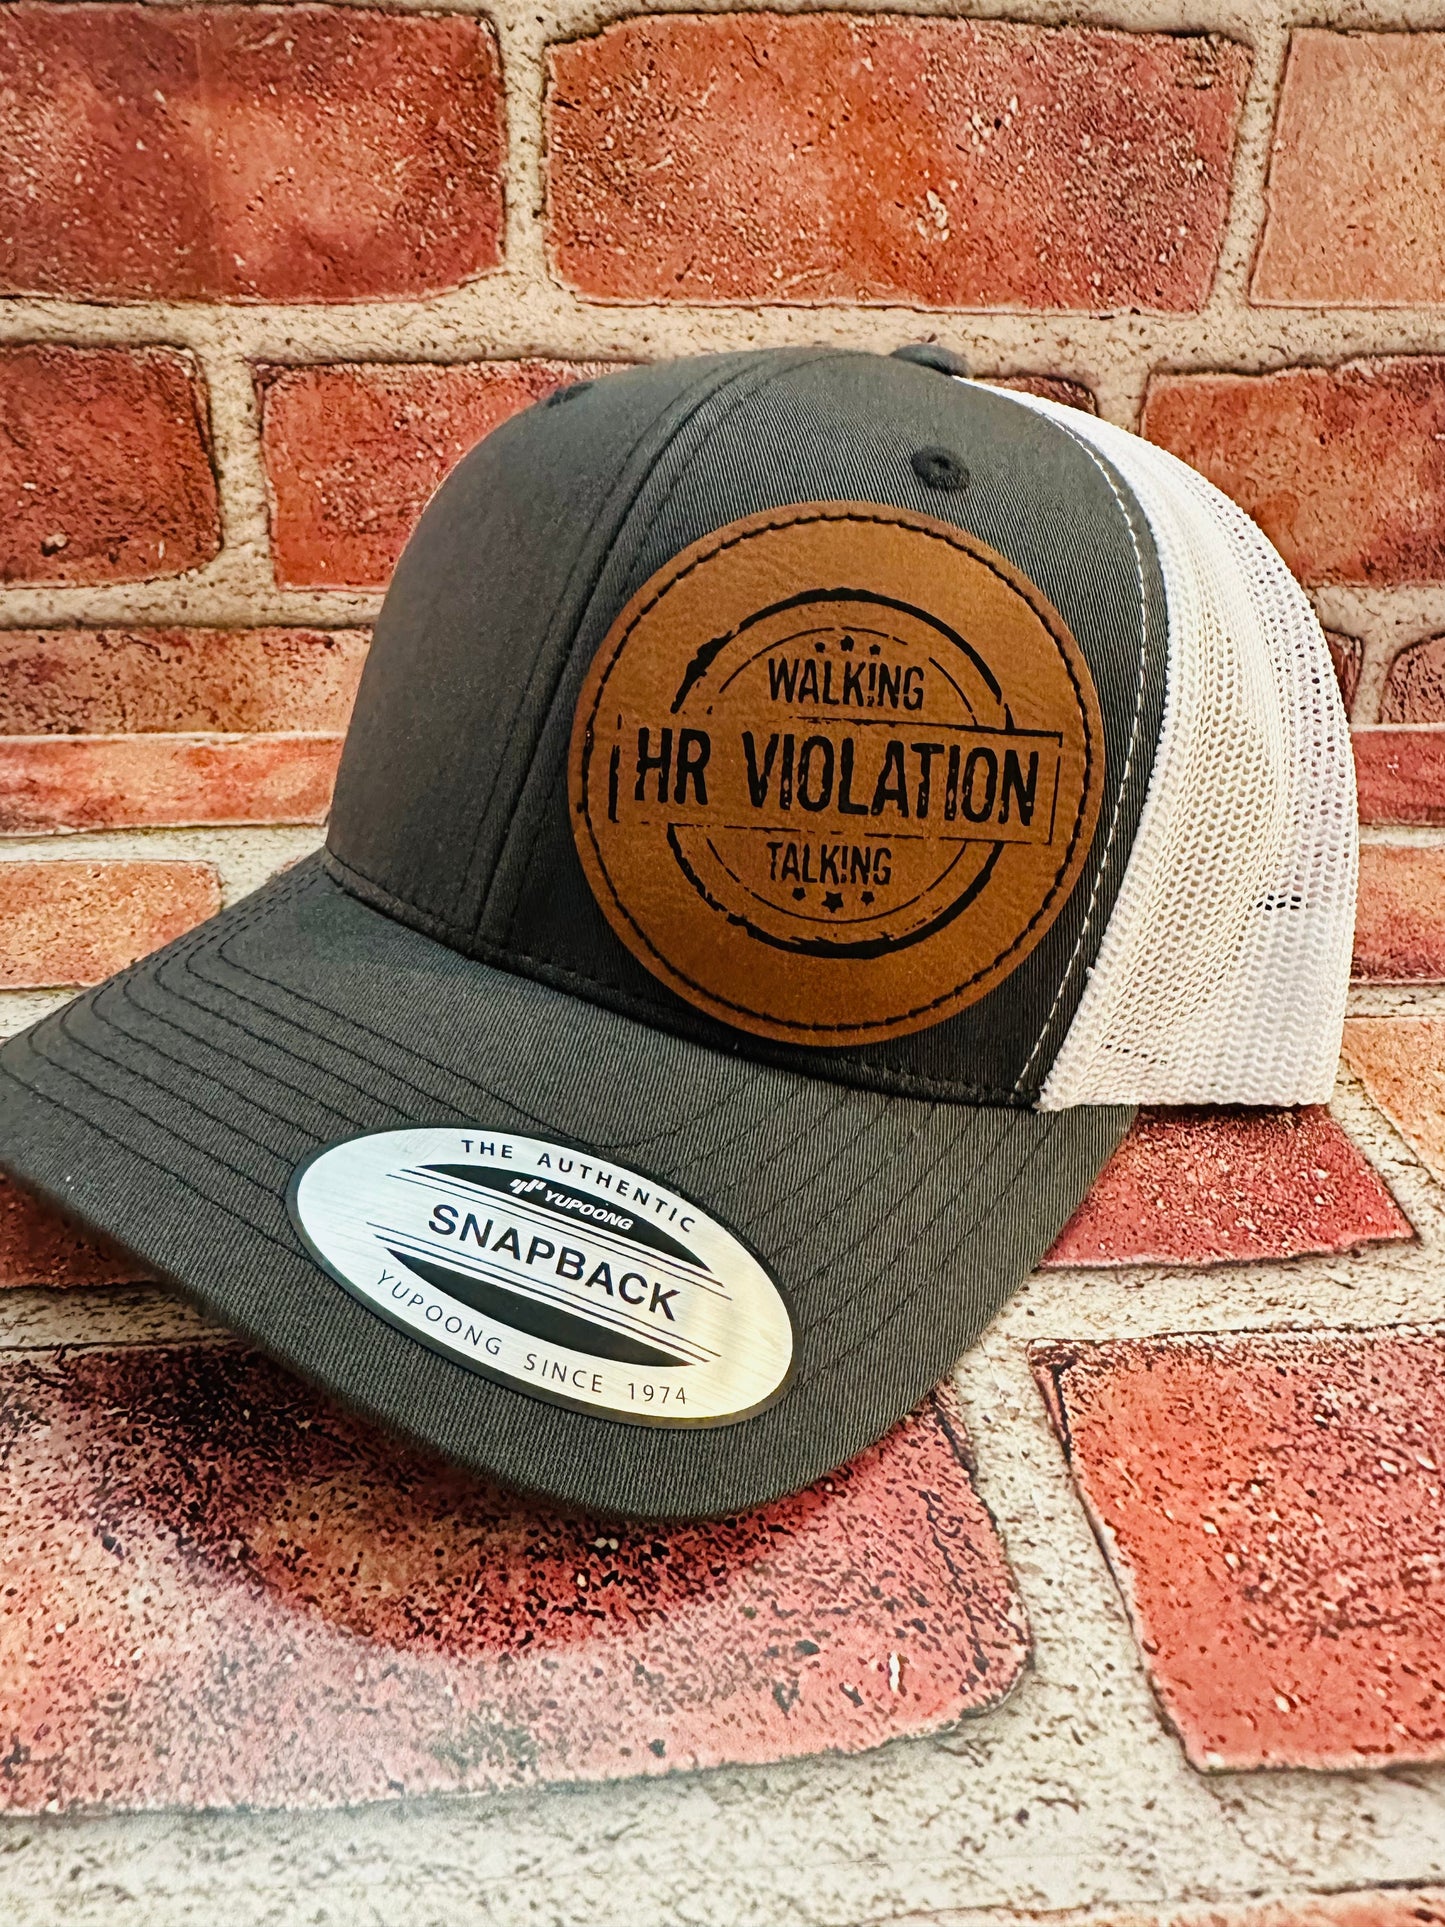 HR Violation Hat